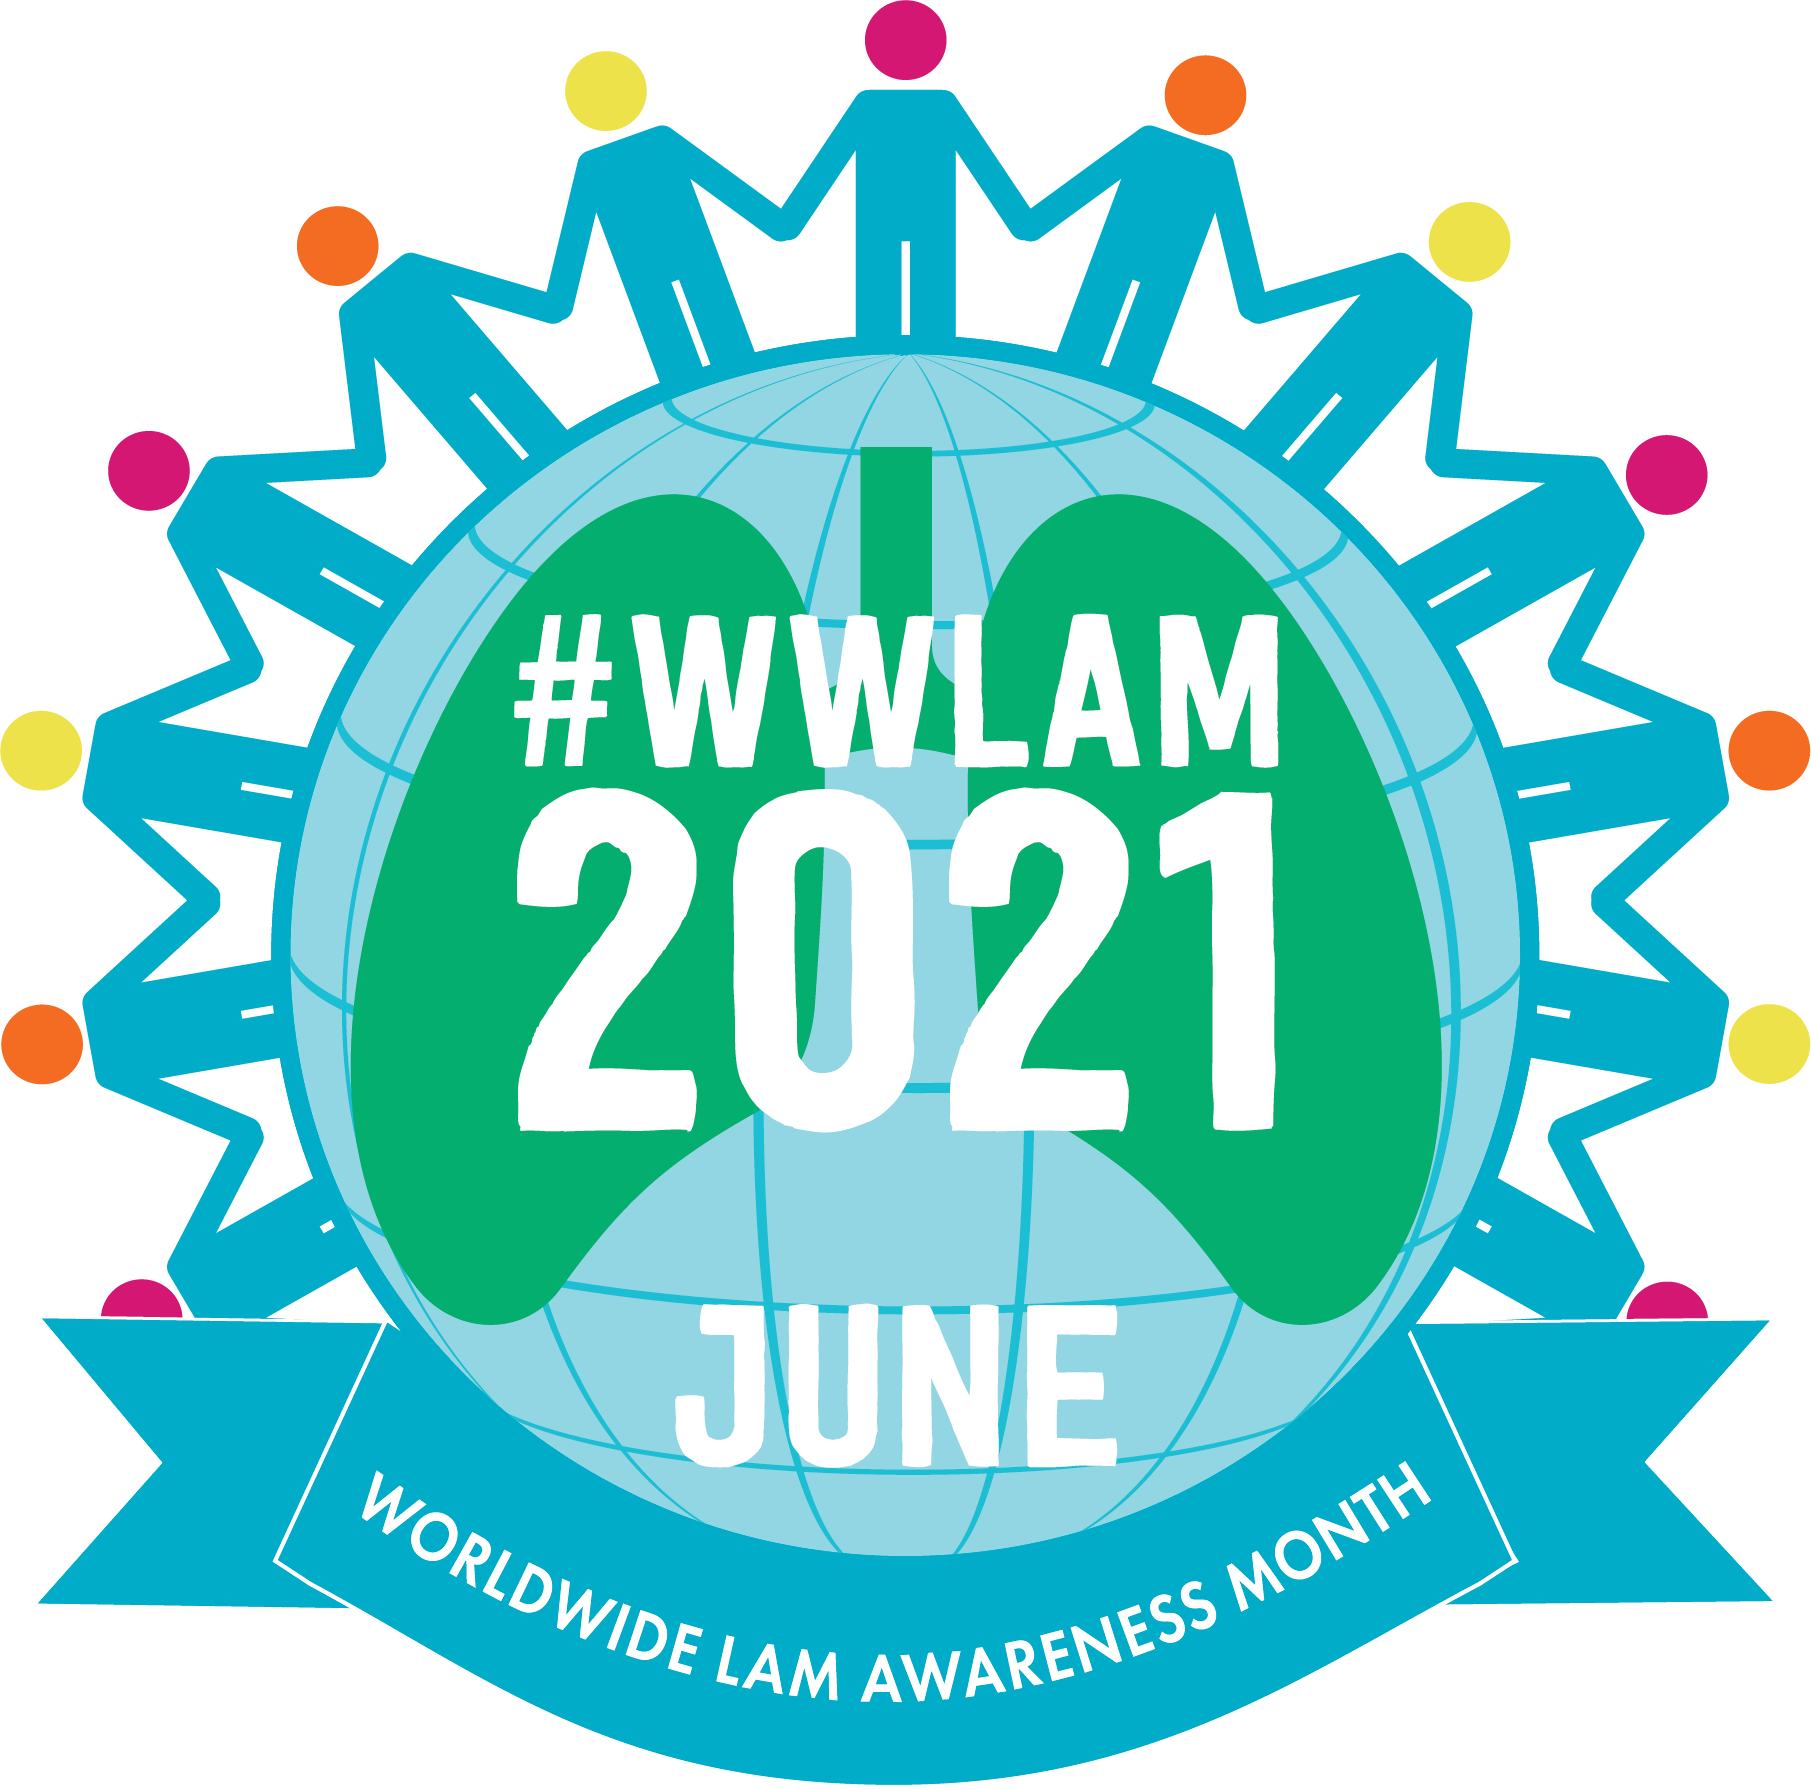 WWLAM 2021 logo